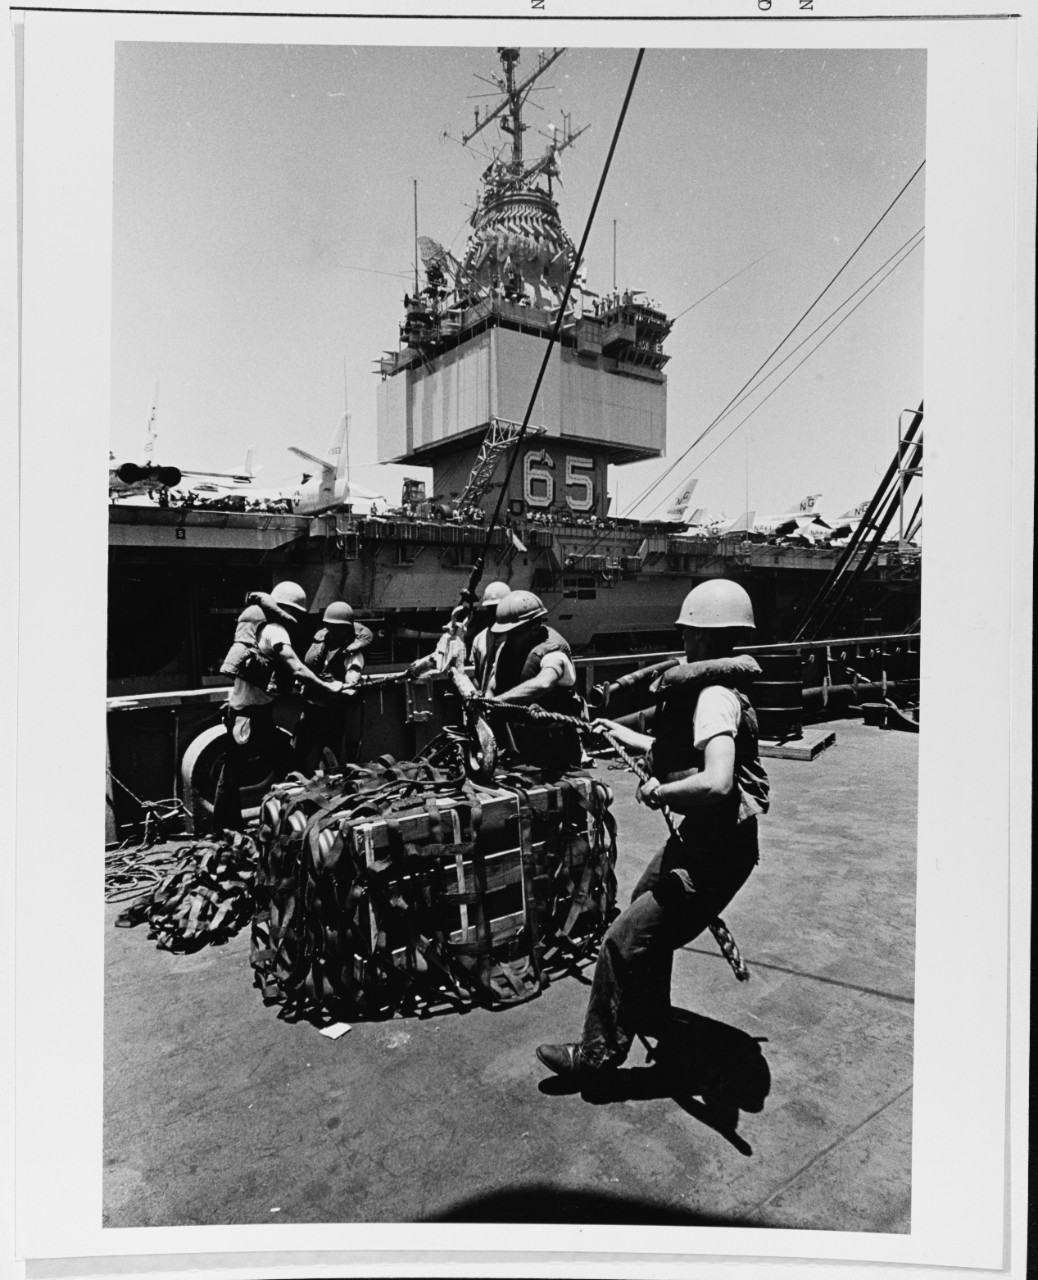 On the deck of the USS SACRAMENTO (AOE-1)